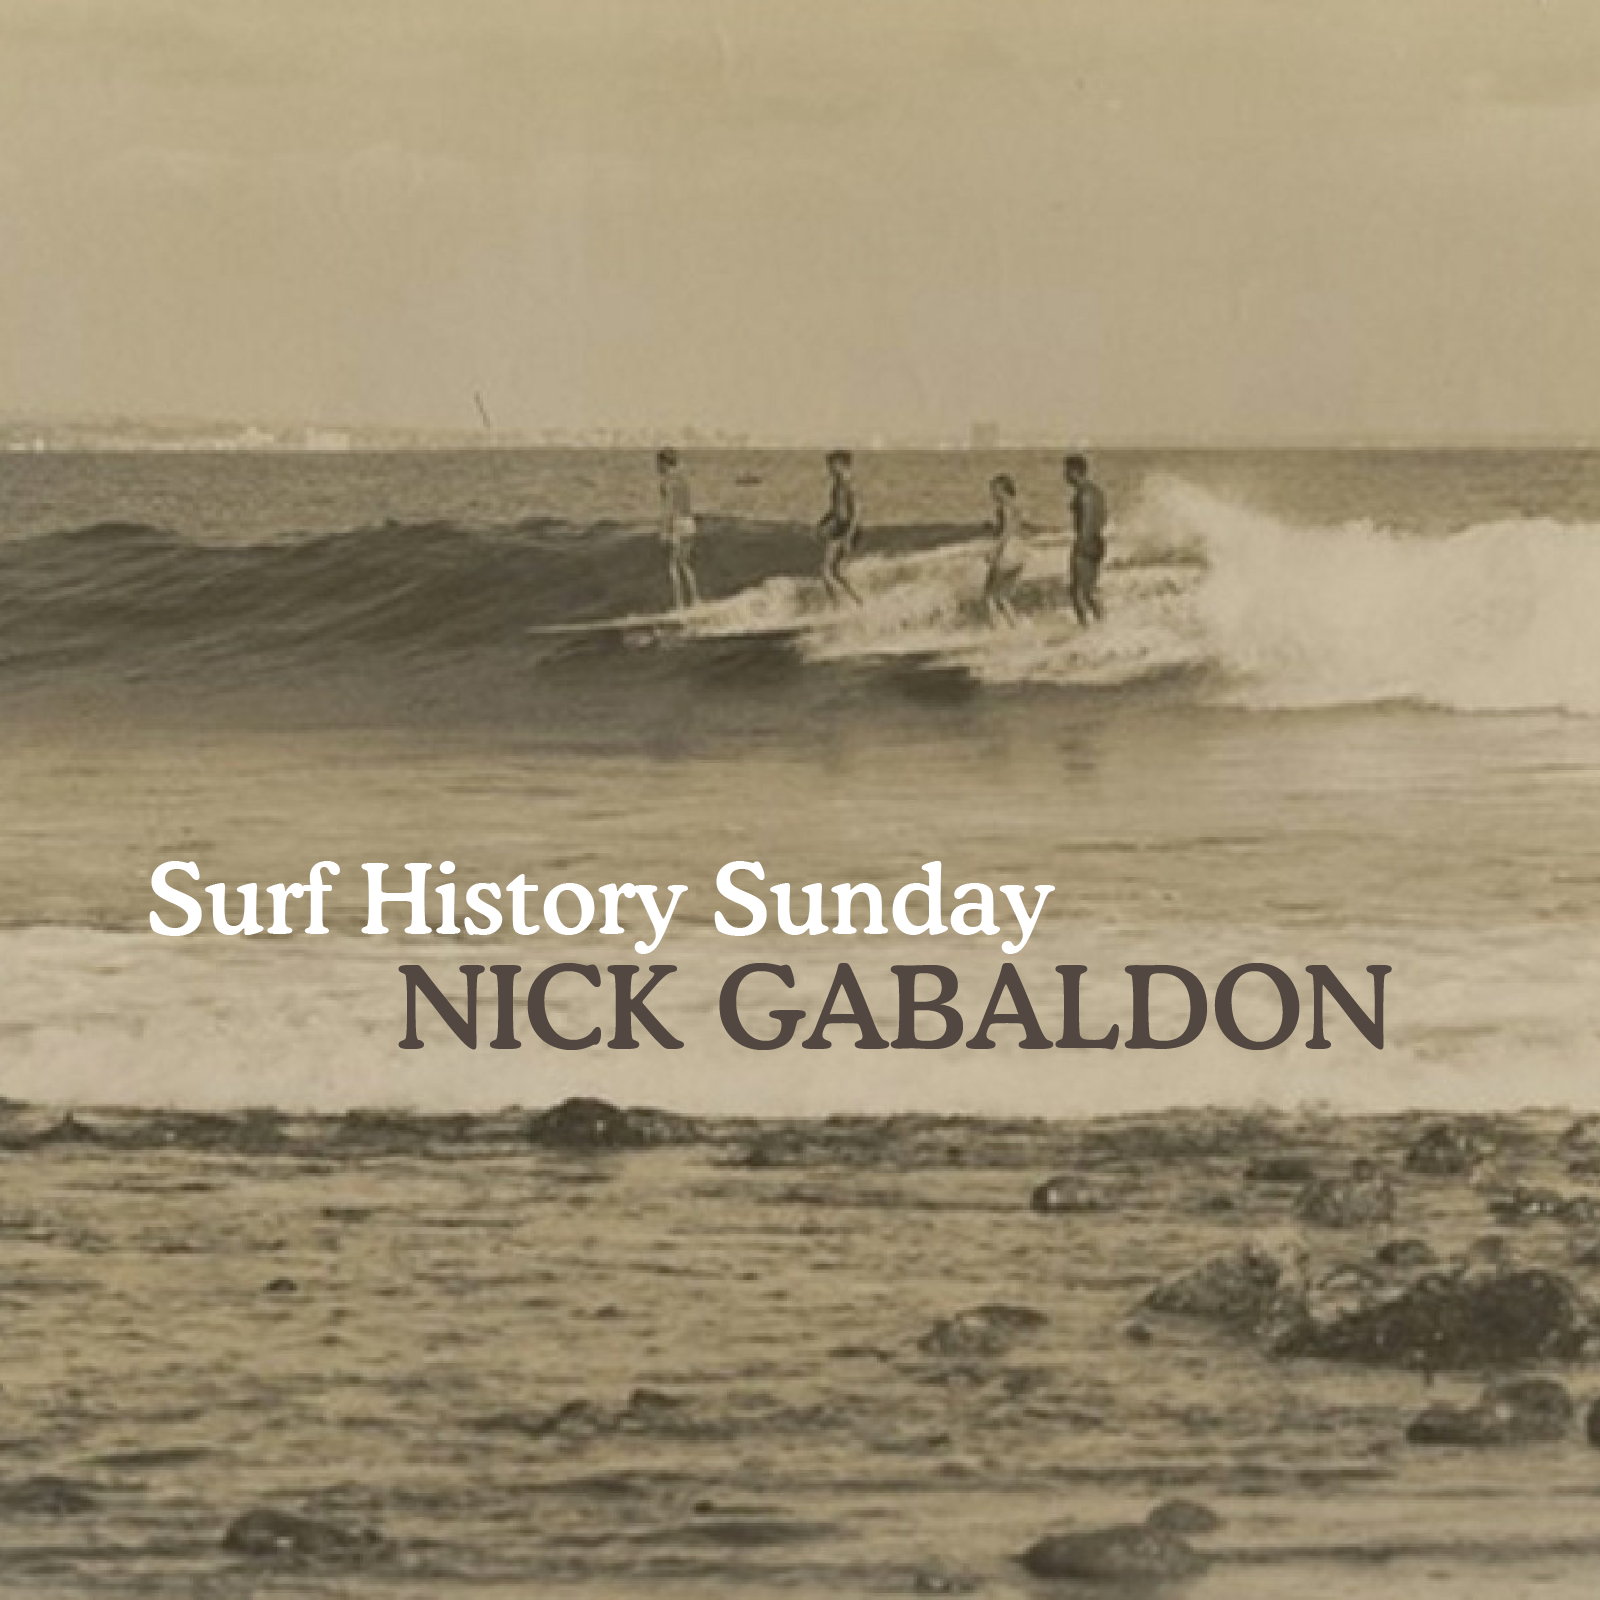 Surf History Sunday: Nick Gabaldon